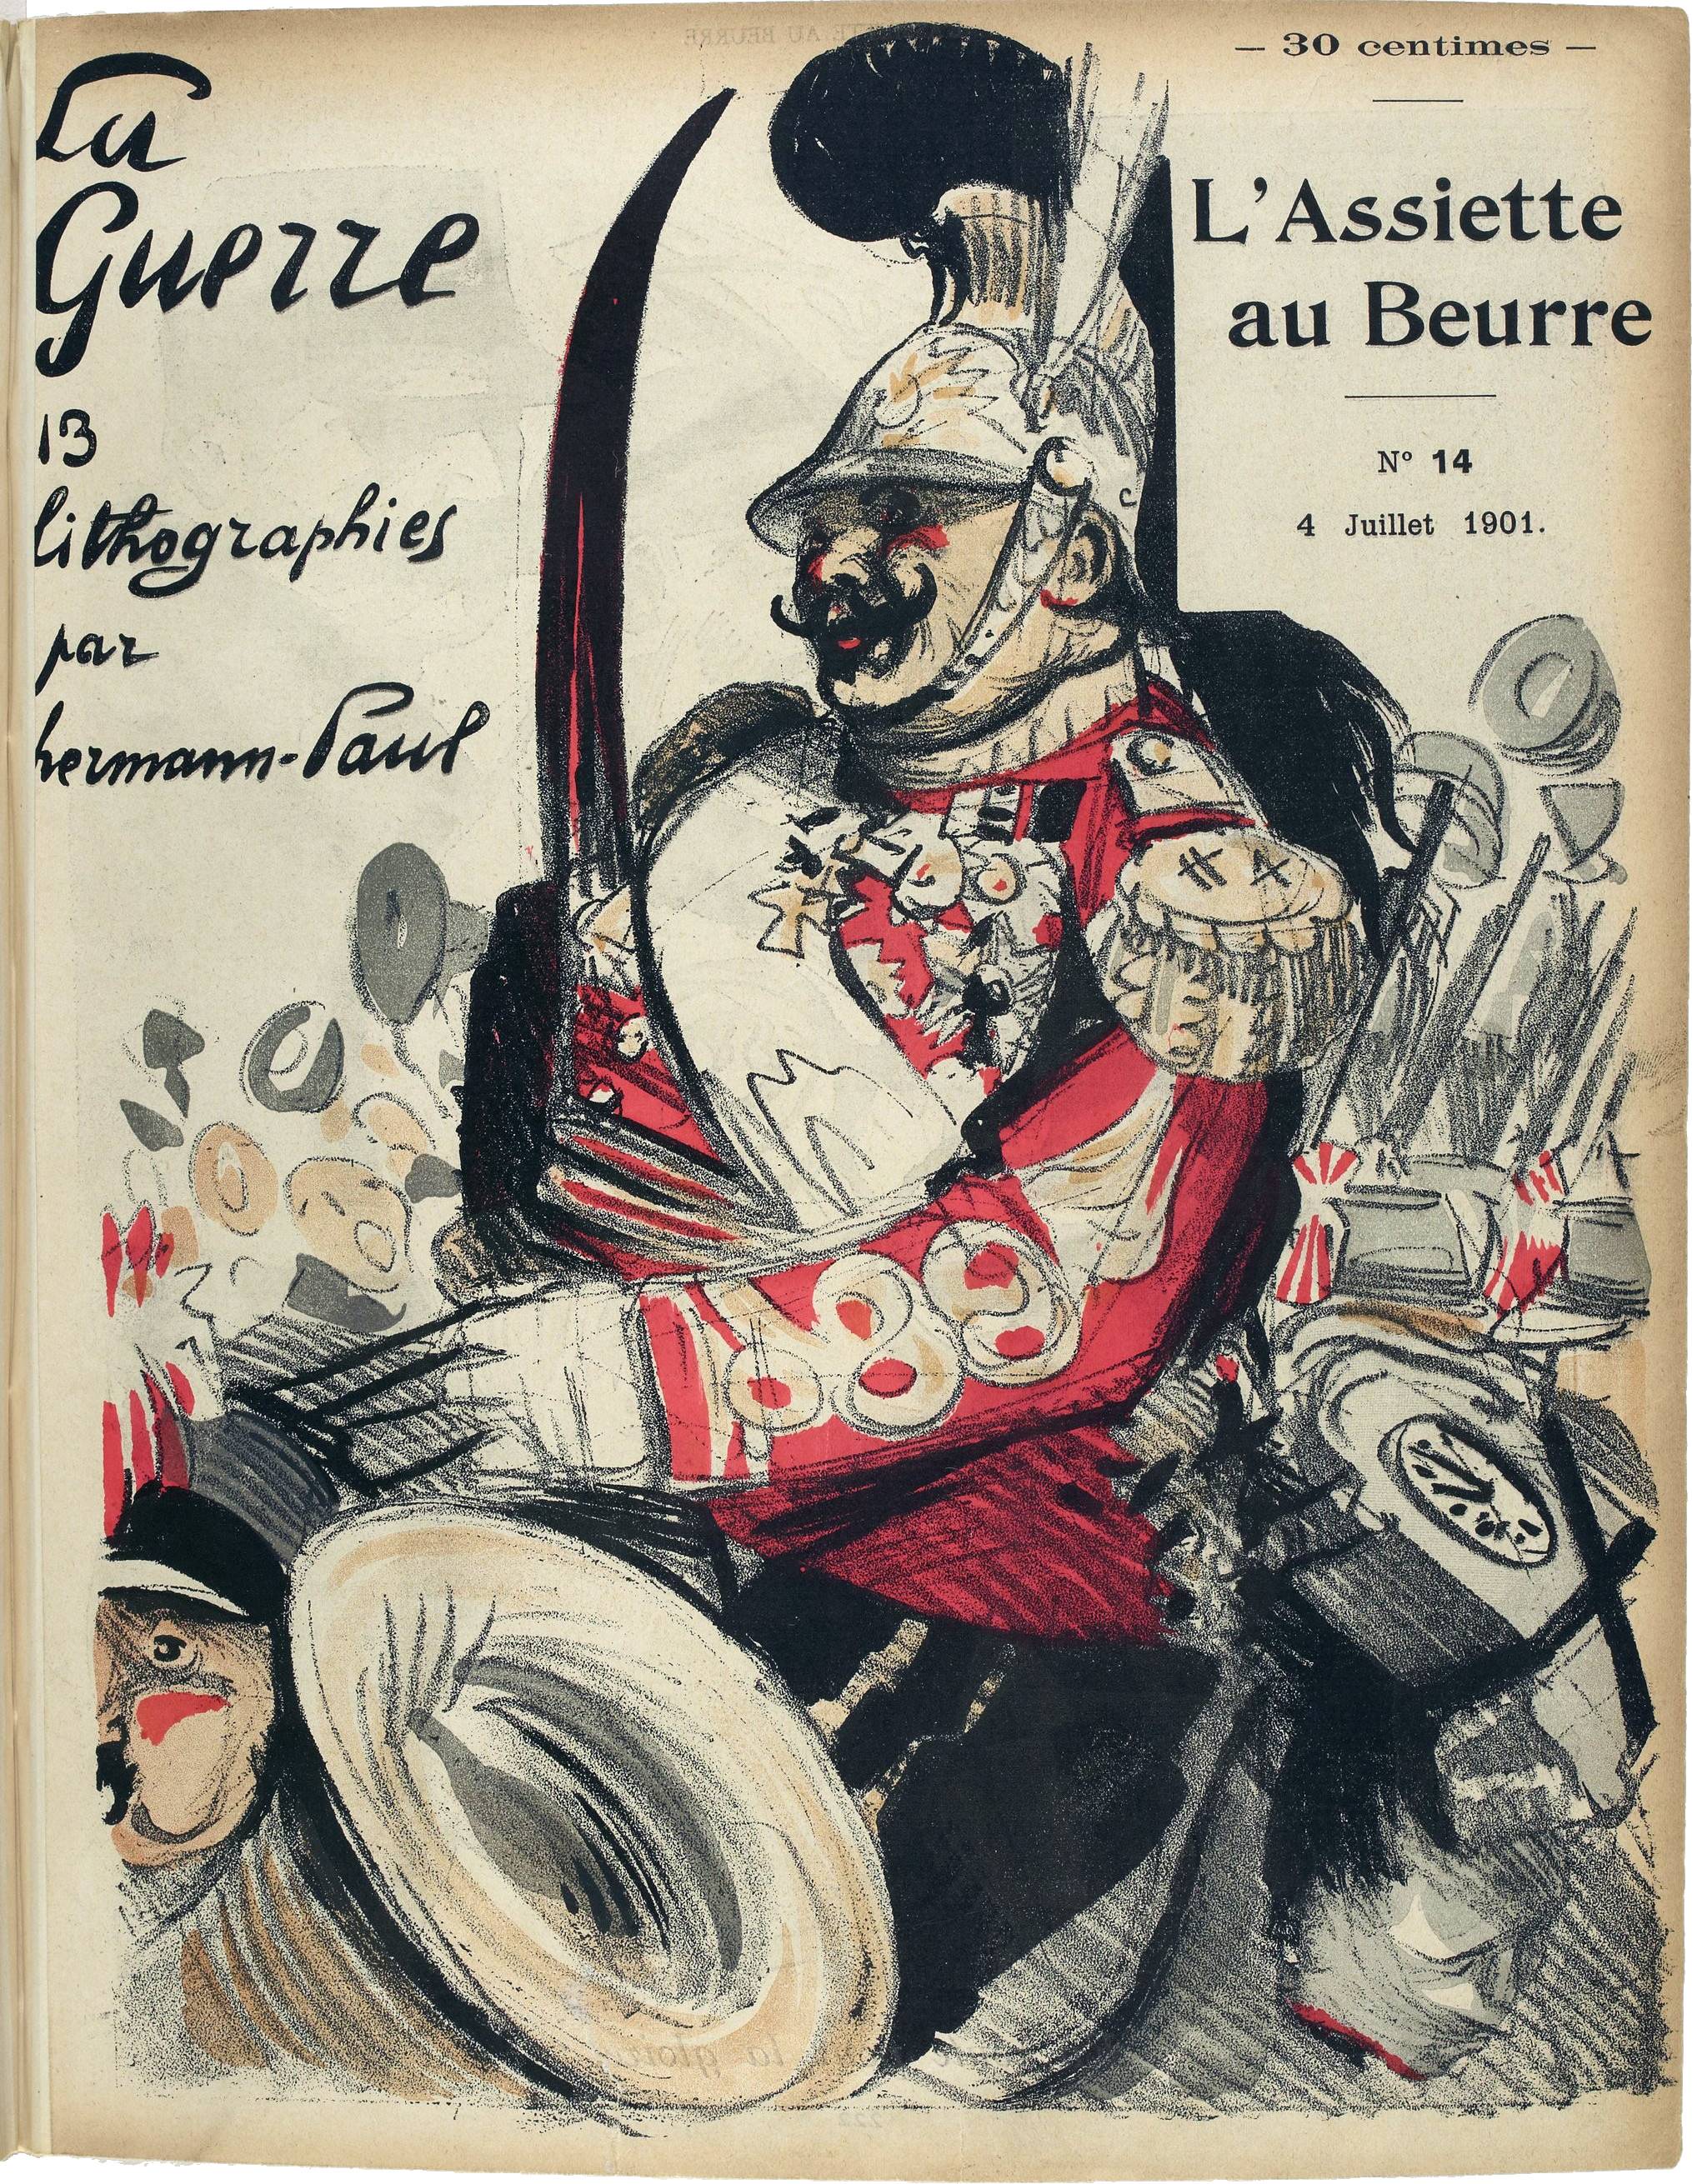 René Georges Hermann-Paul (1901)